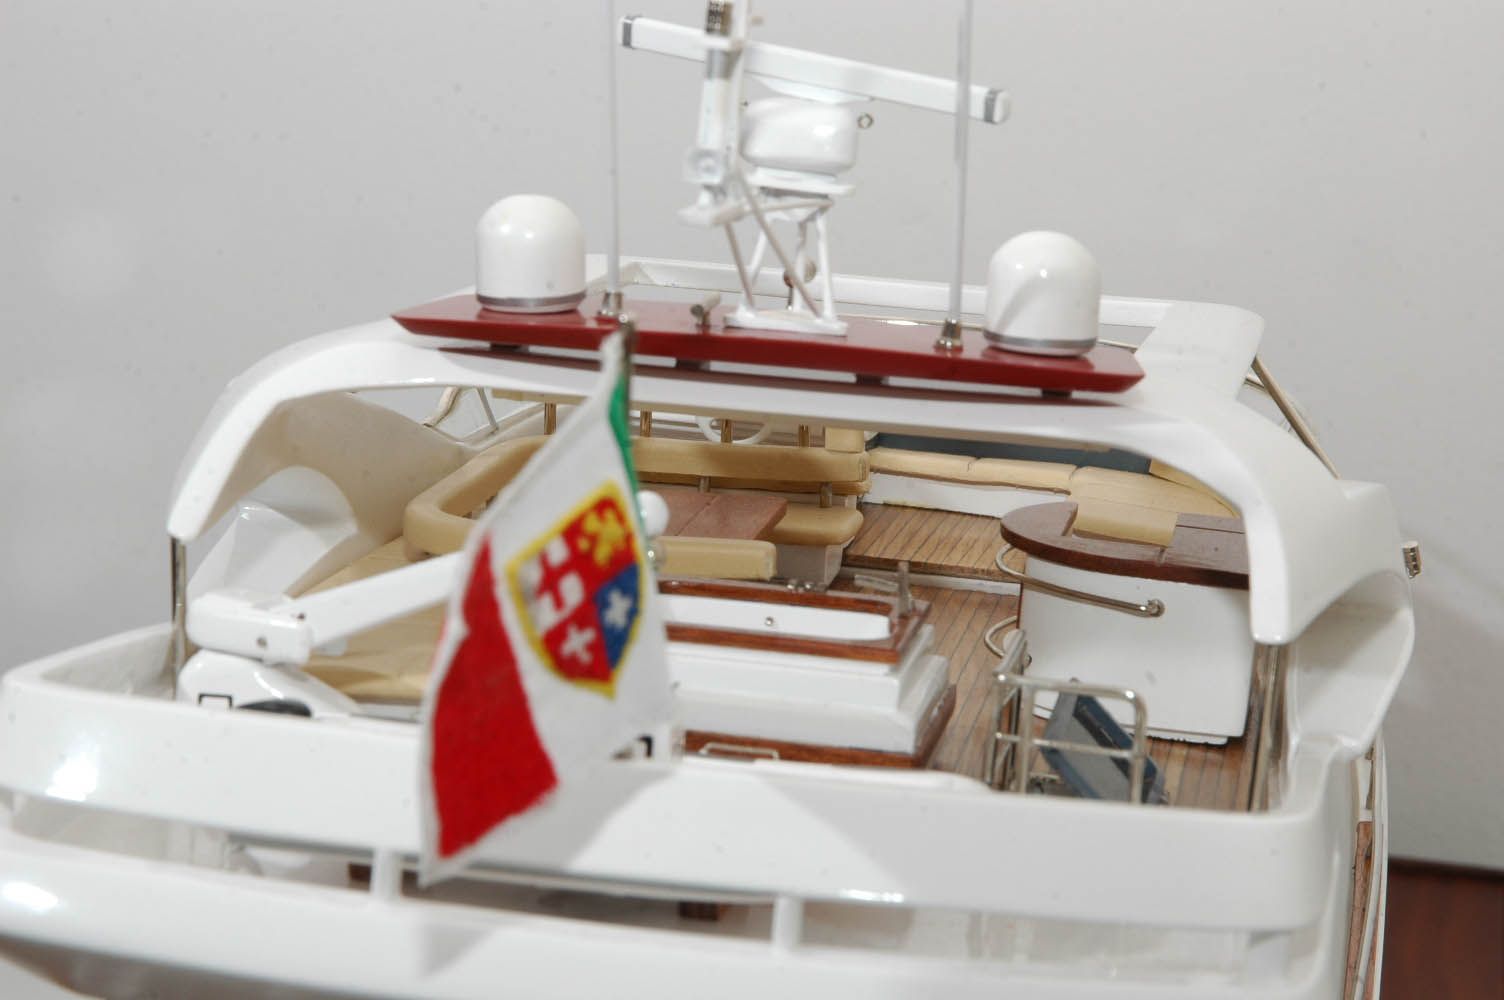 Aicon Fly 85 - Maquette de bateau